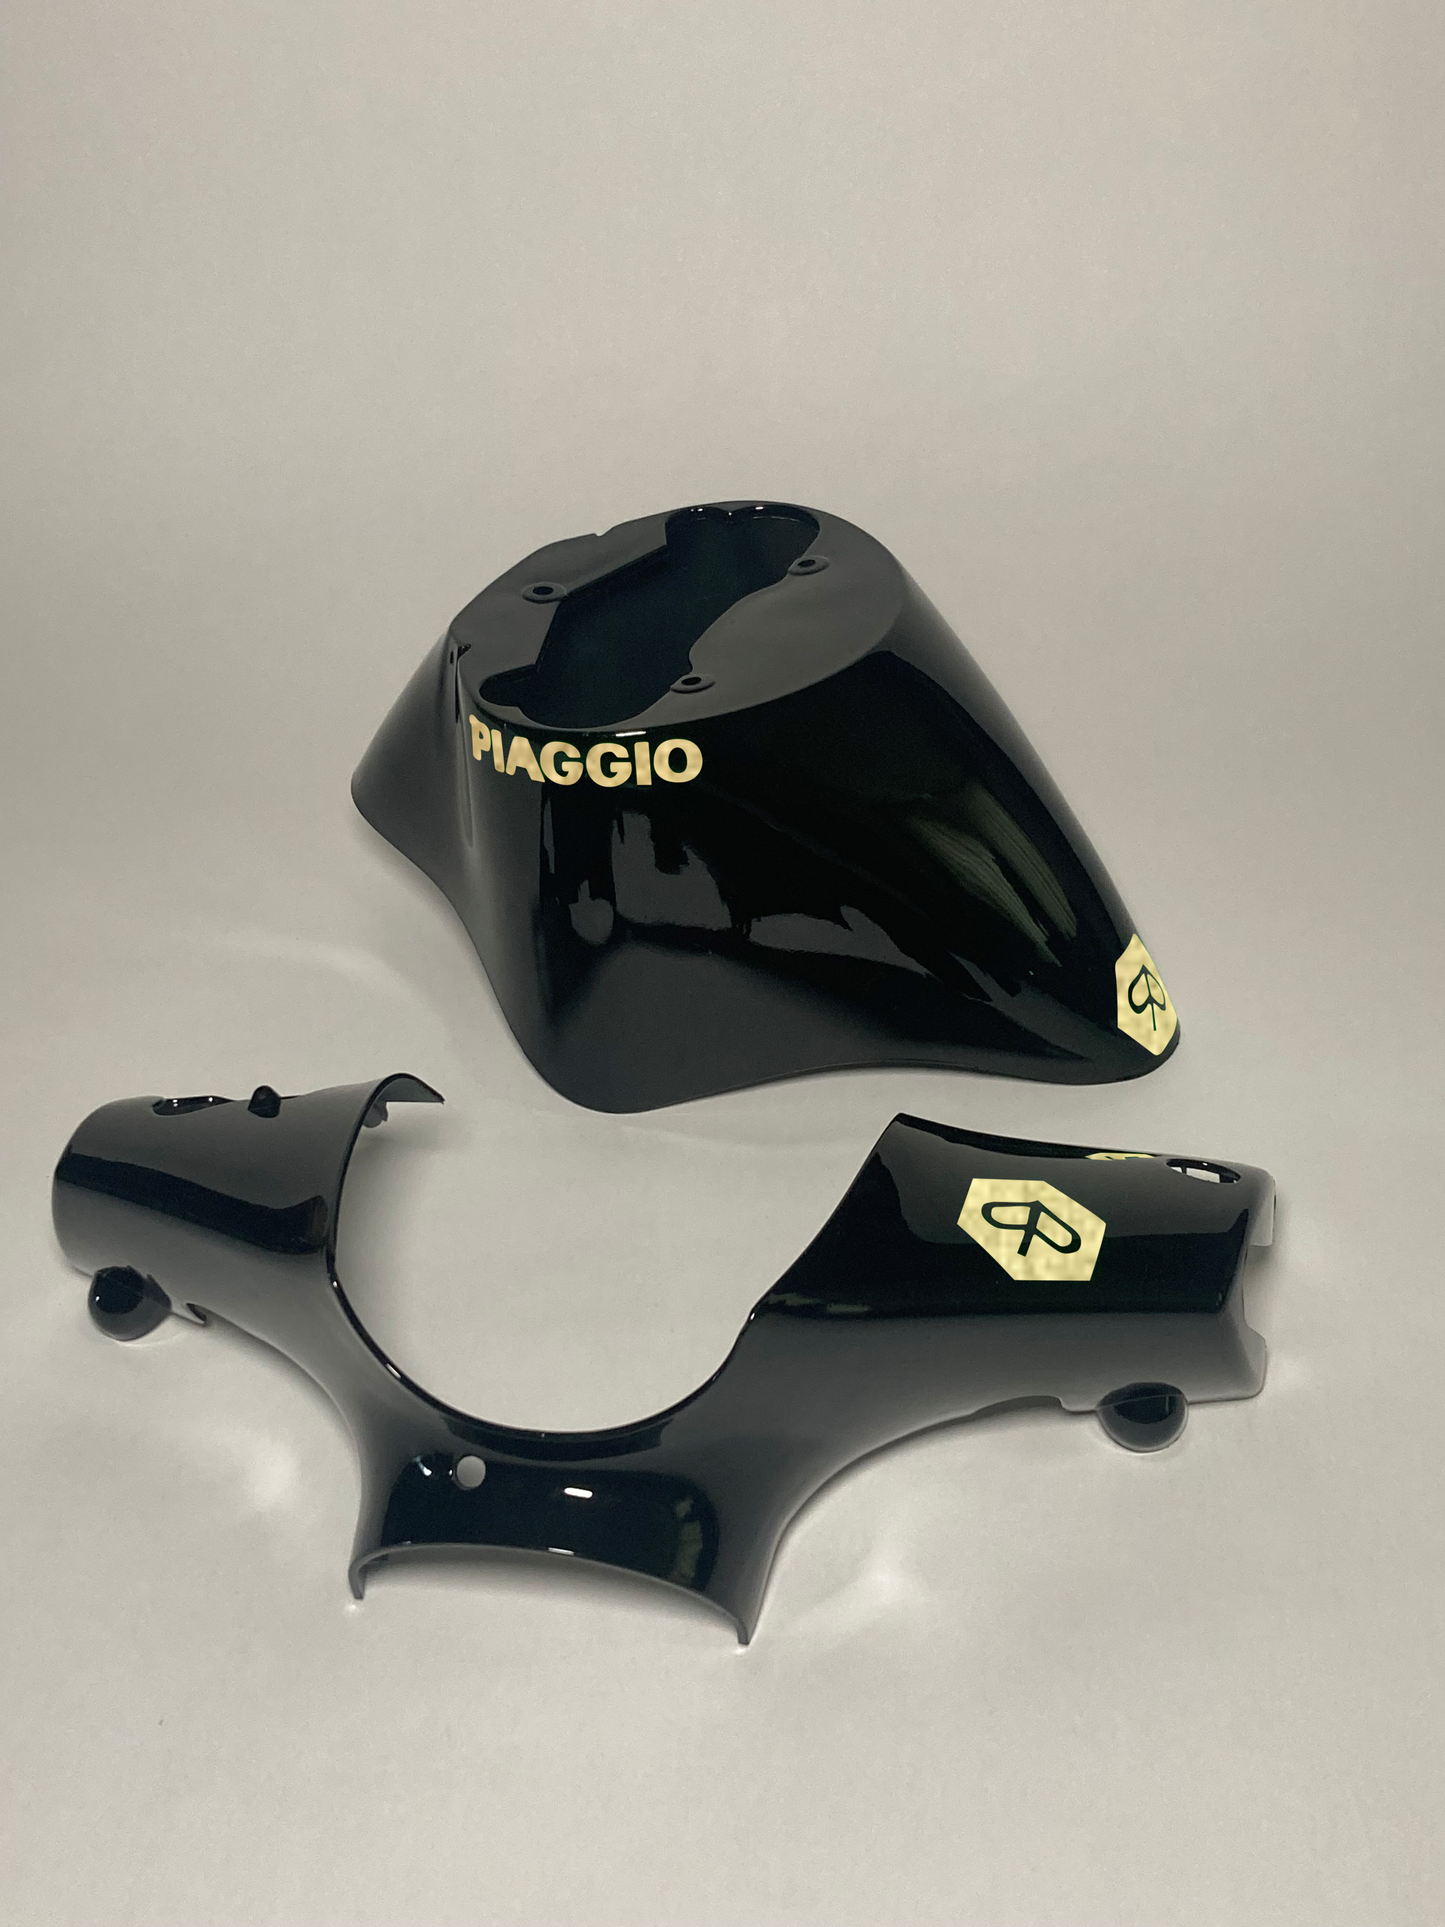 Reißverschluss Piaggio | Reflektierendes Schwarz